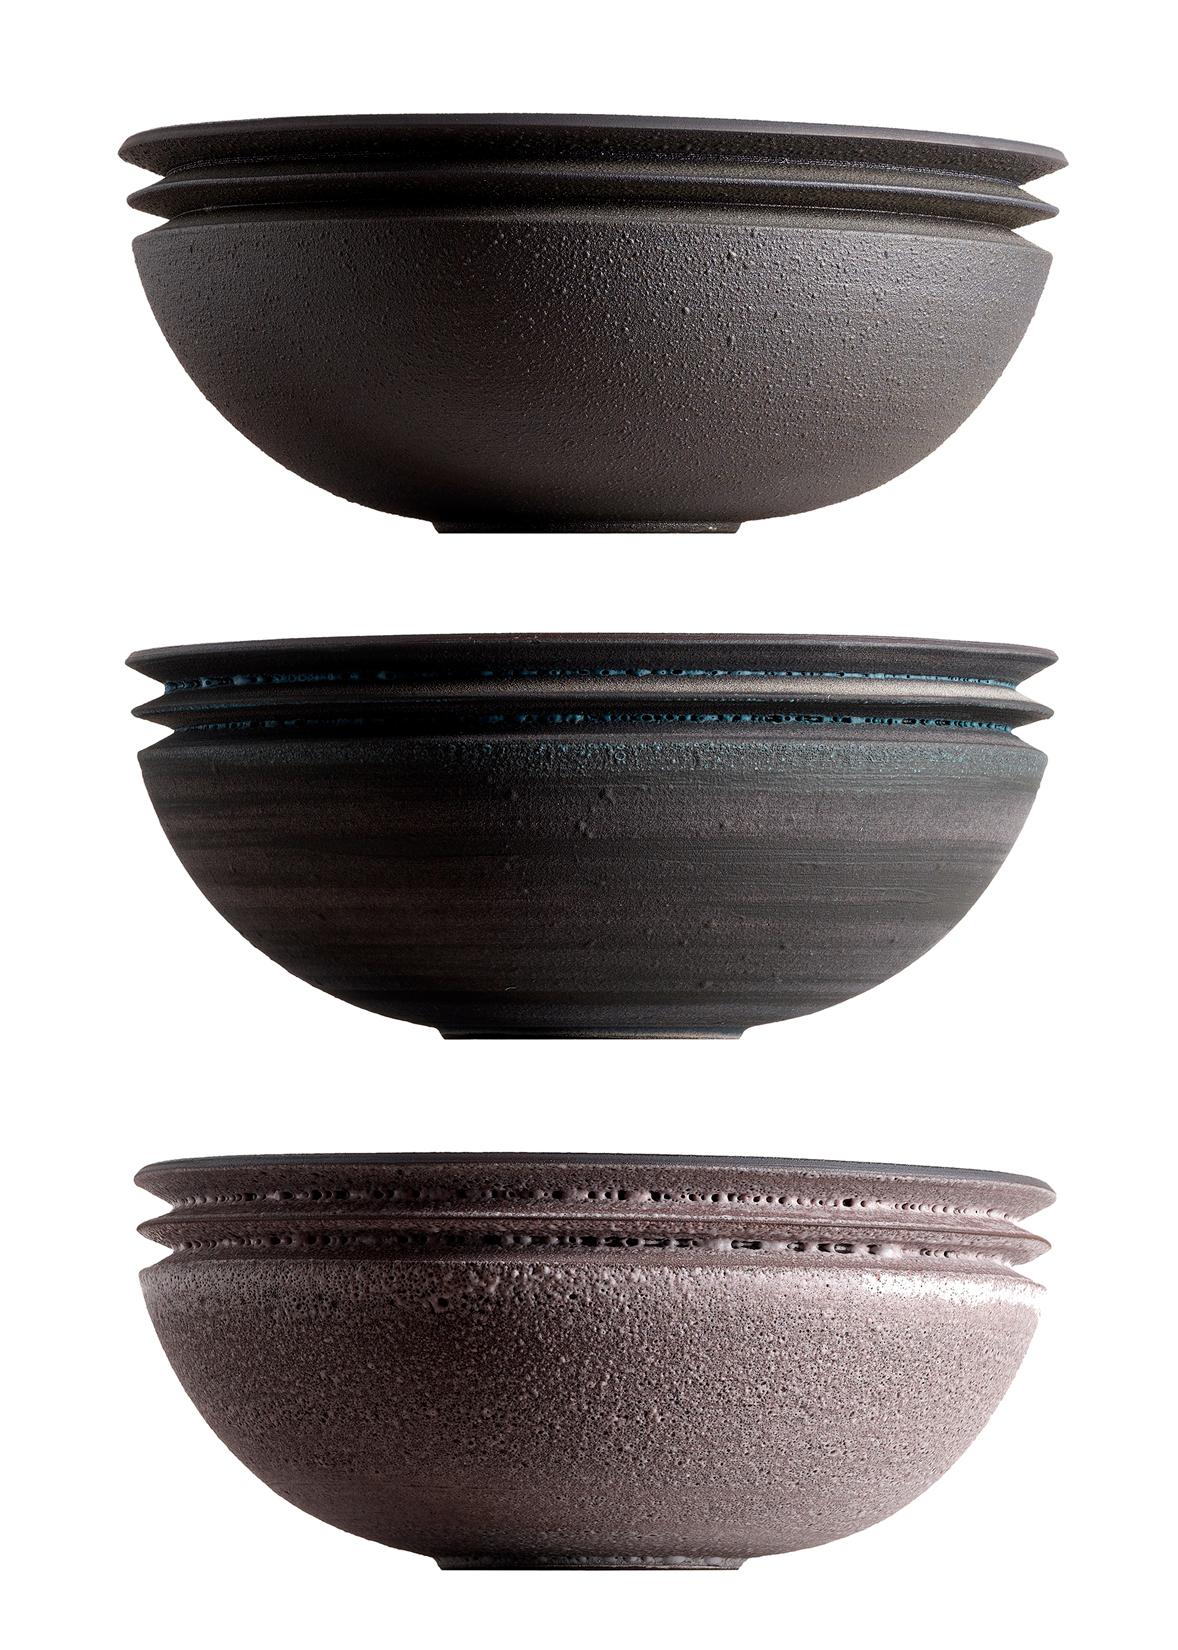 Other Strata, Vessel N, Bowl, Slip Cast Ceramic, N/O Vessels Collection For Sale